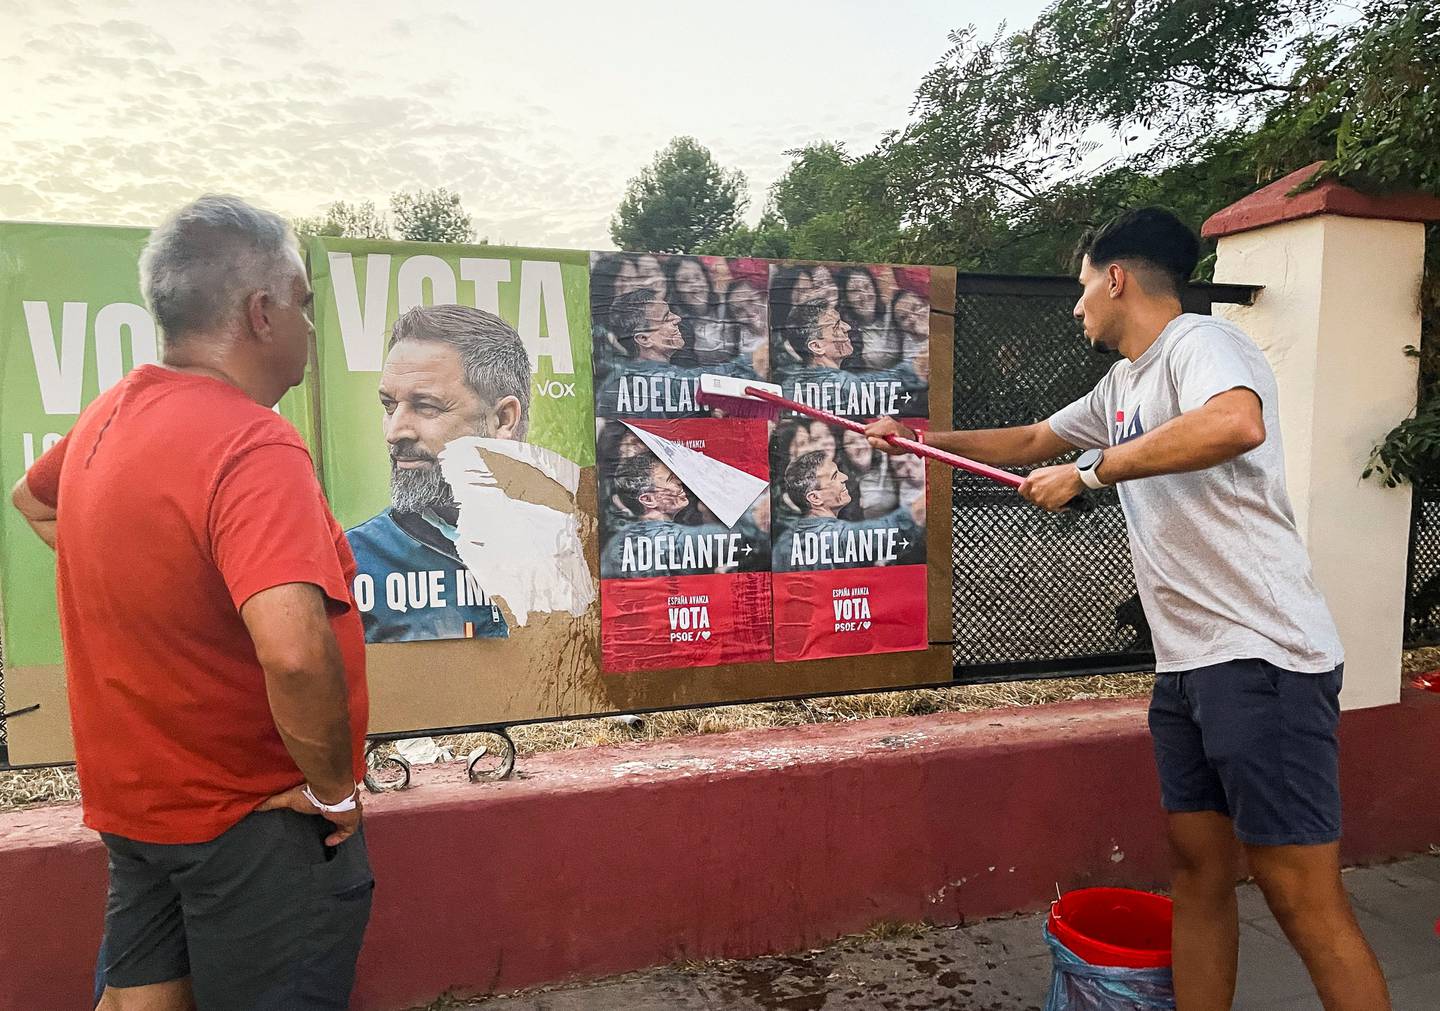 Valgkampplakater med bilde av statsminister Pedro Sanchez henges opp ved siden av plakater av Vox-leder Santiago Abascal.